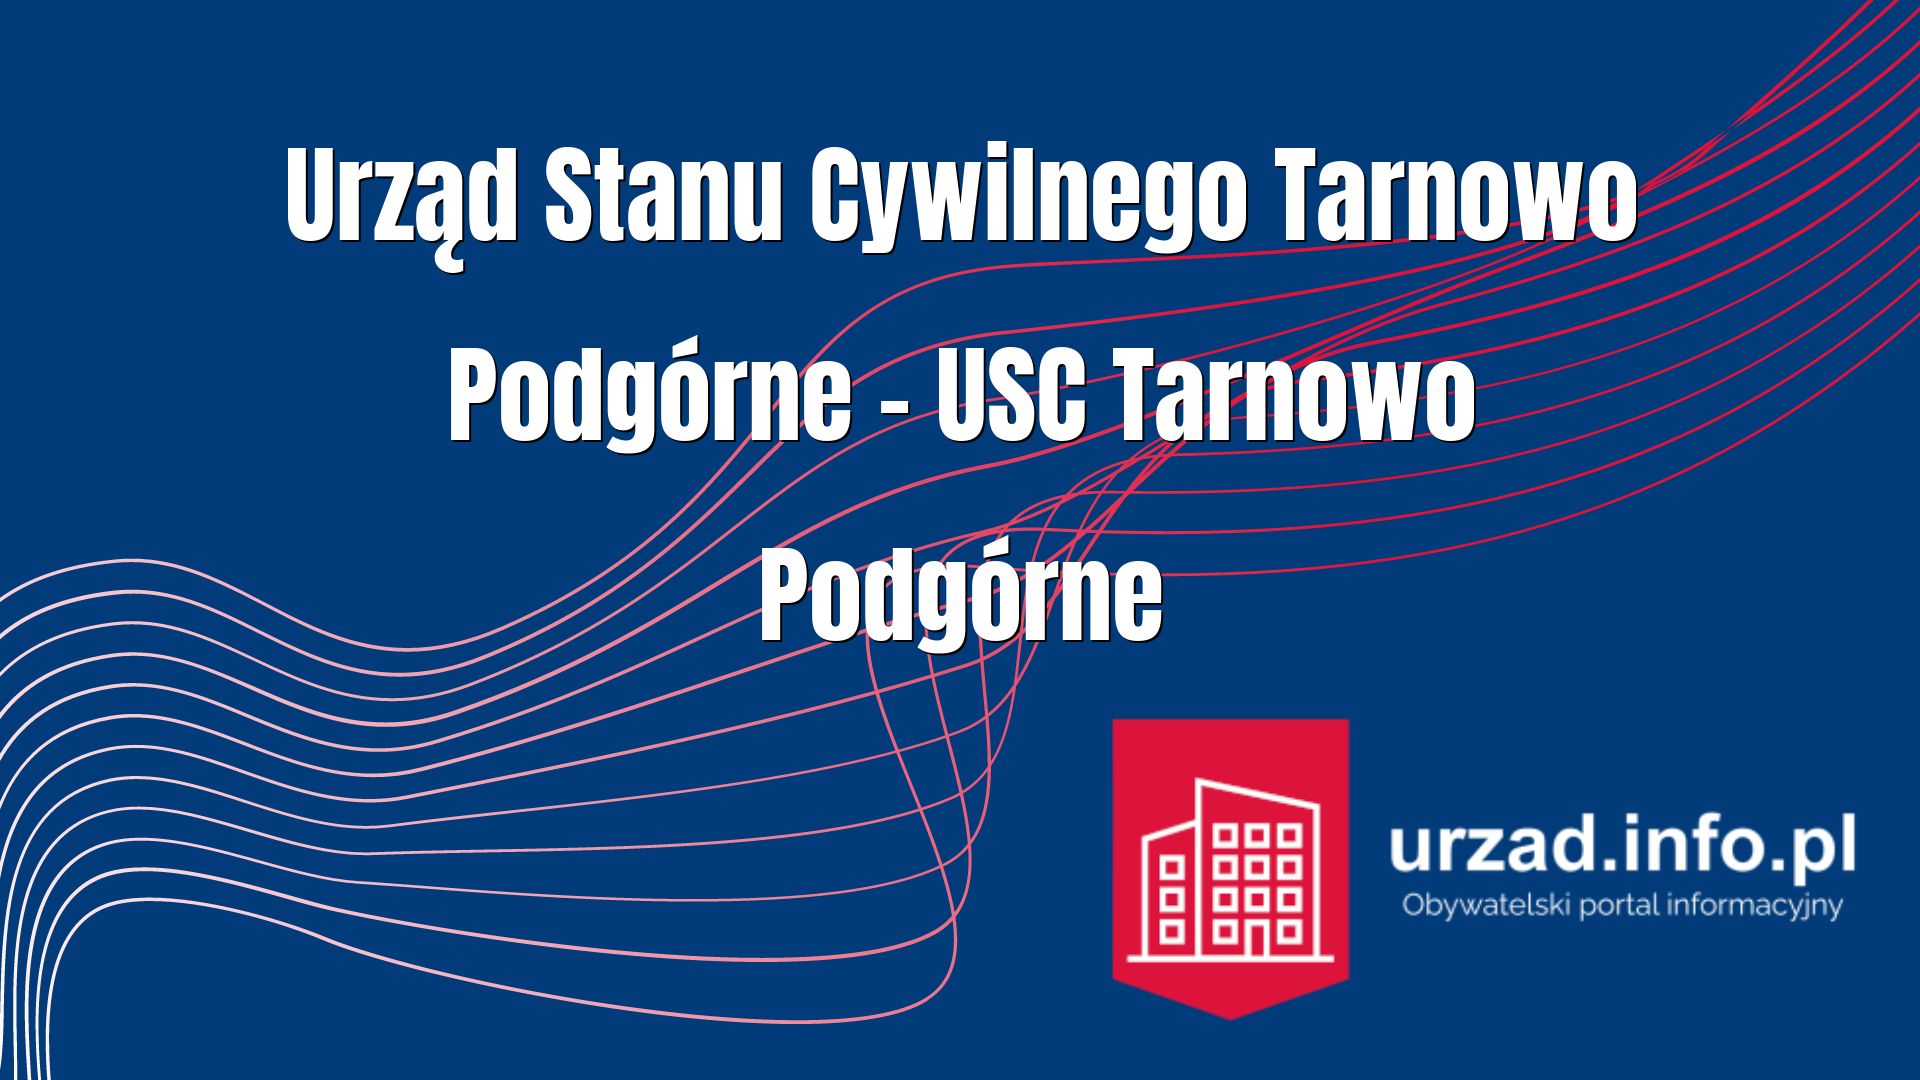 Urząd Stanu Cywilnego Tarnowo Podgórne – USC Tarnowa Podgórnego